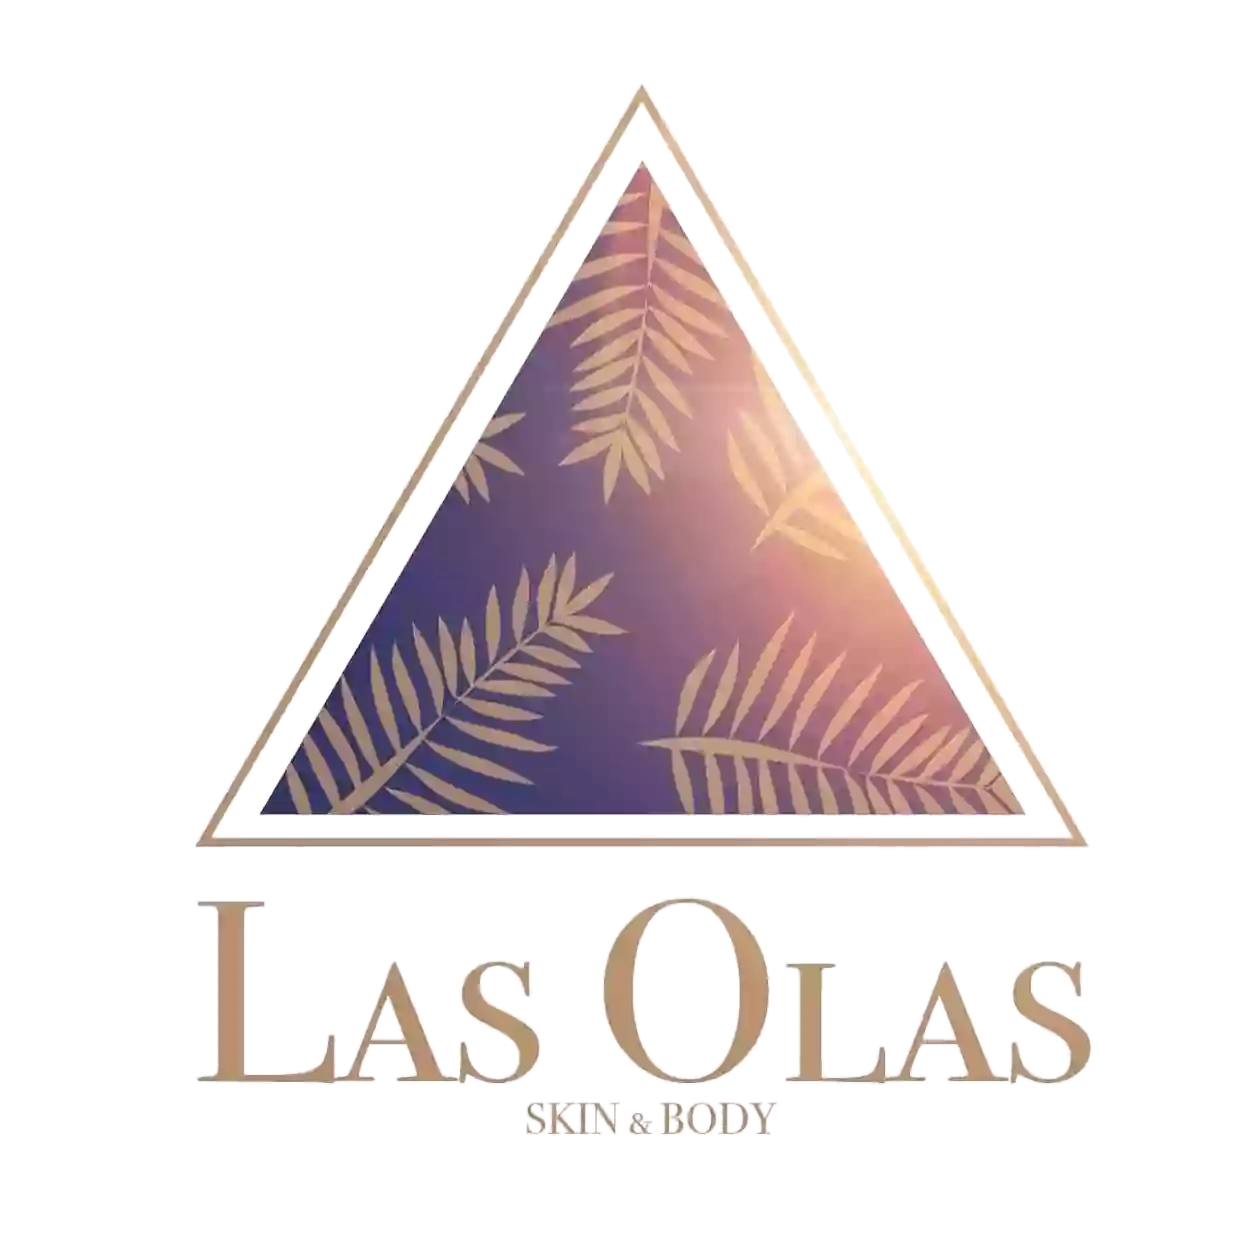 Las Olas Skin and Body